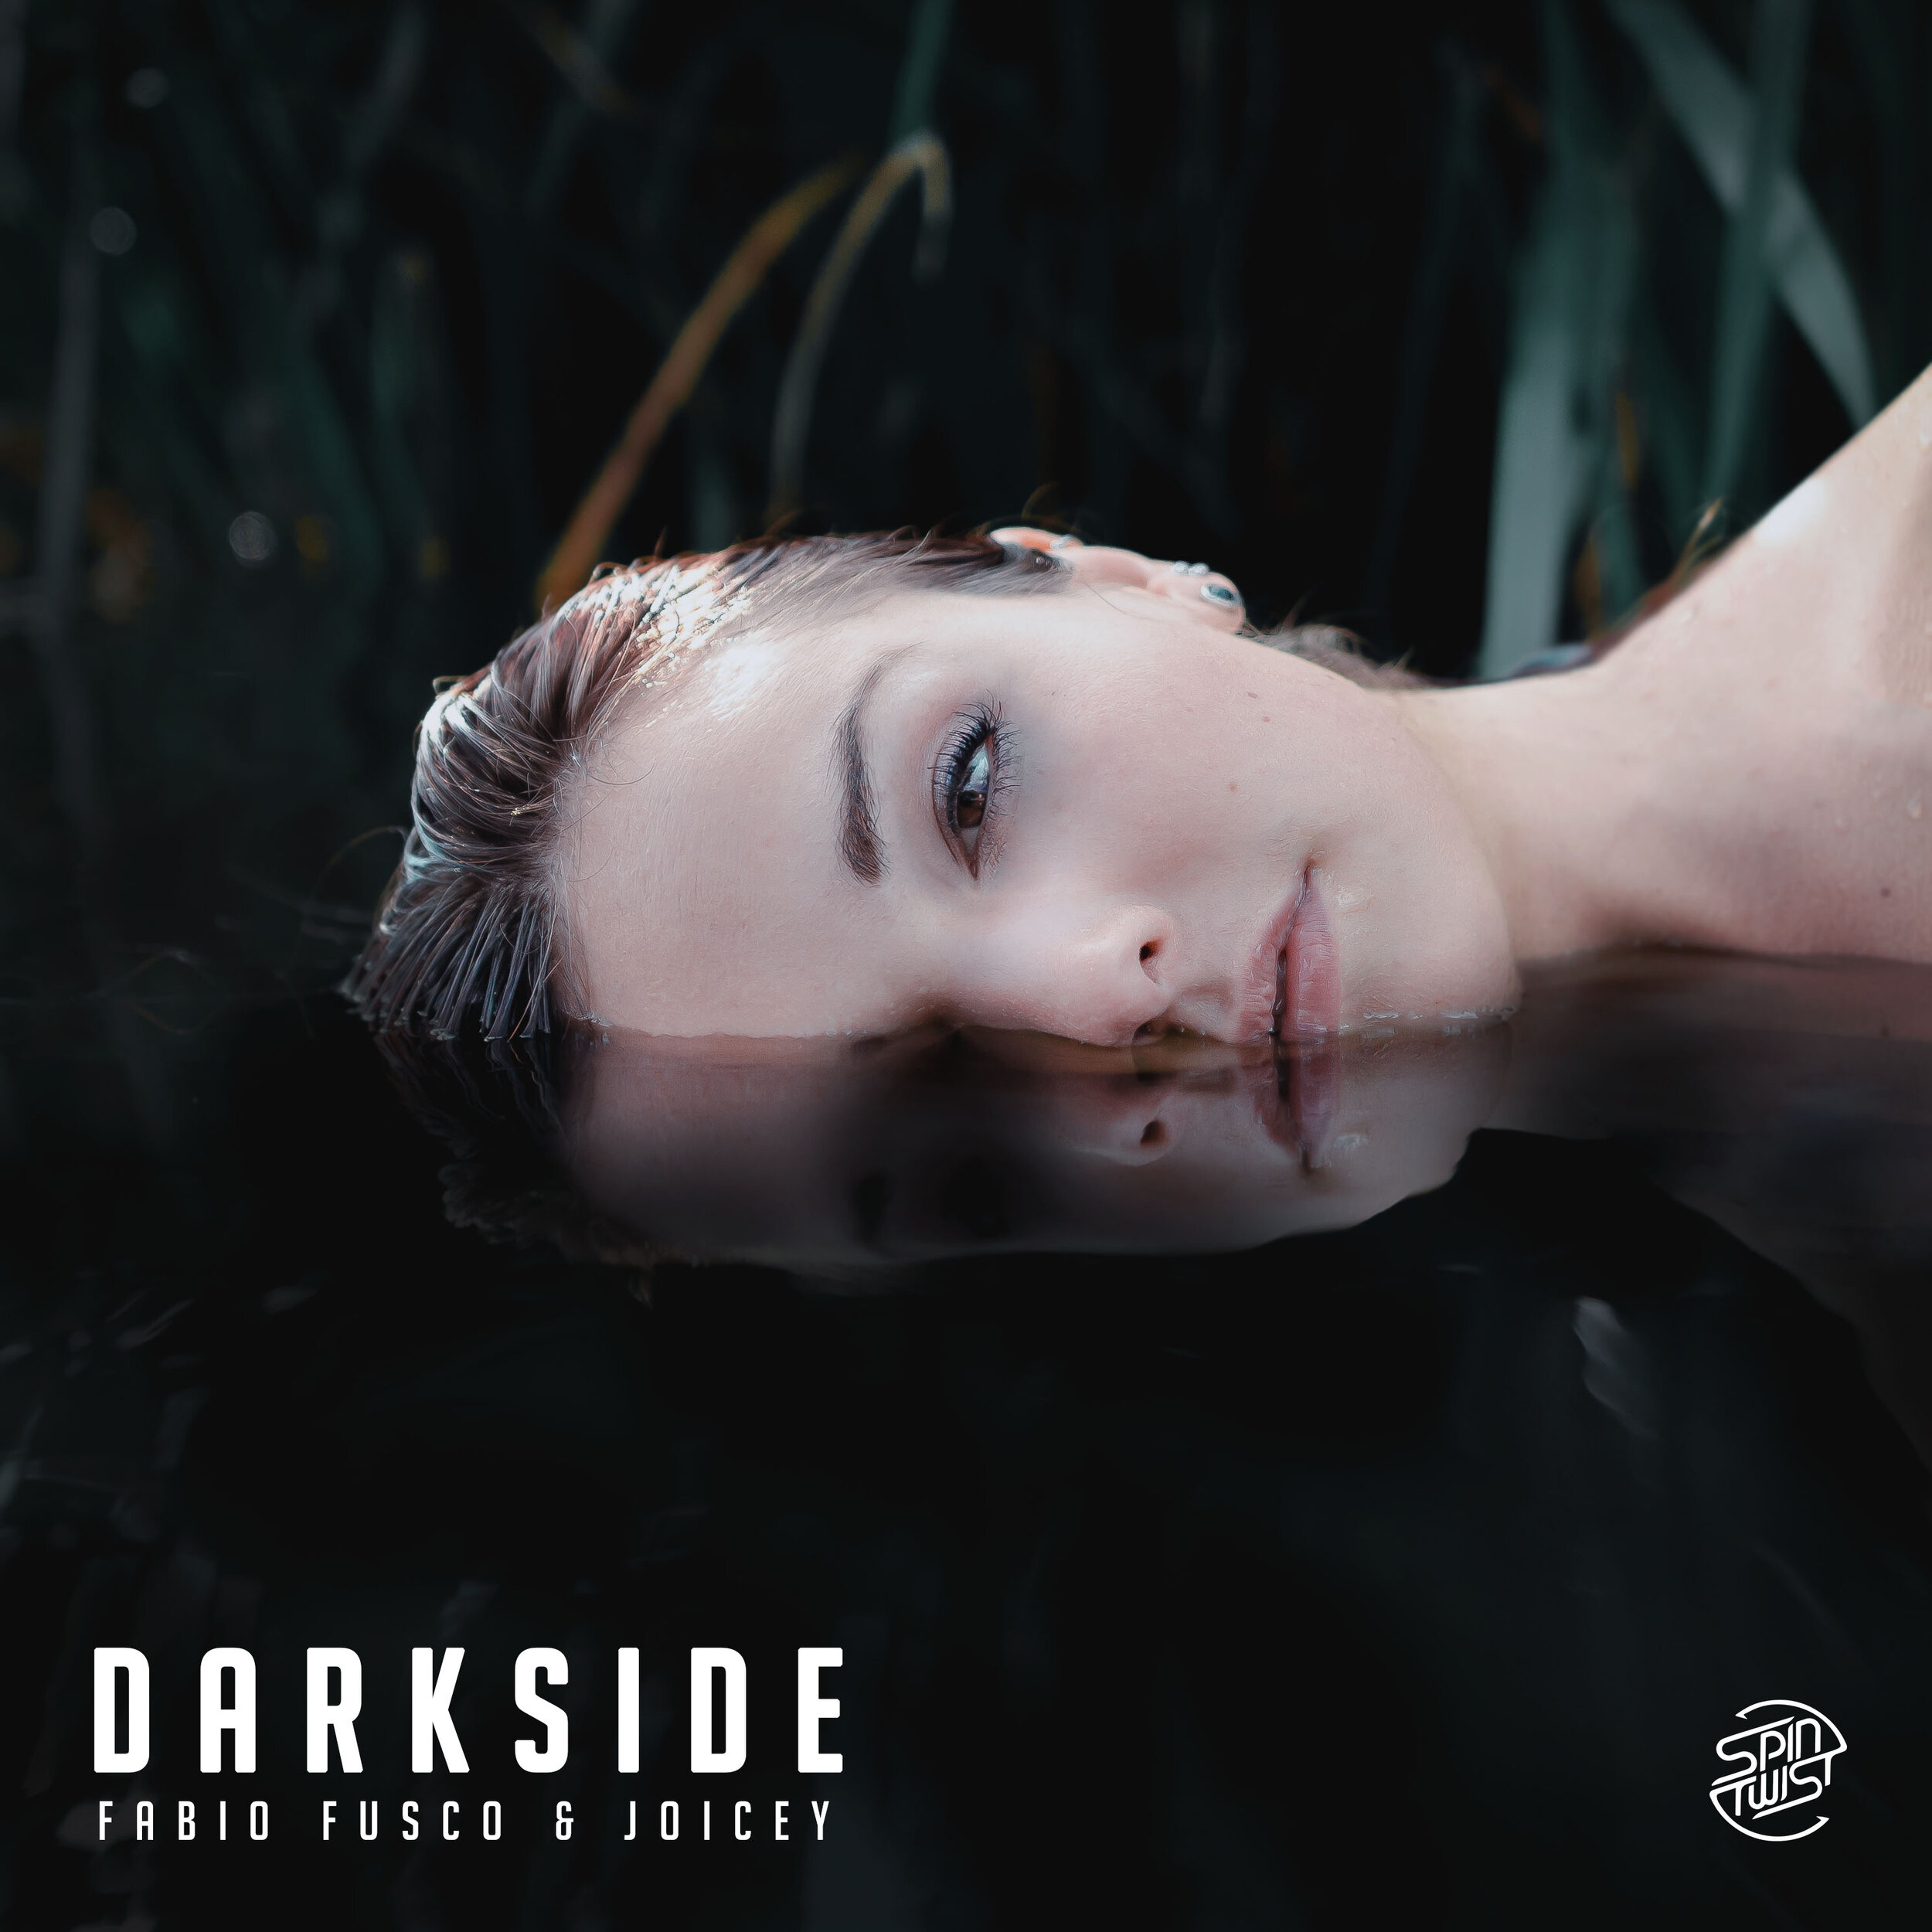 Darkside - Fabio Fusco & Joicey.jpg